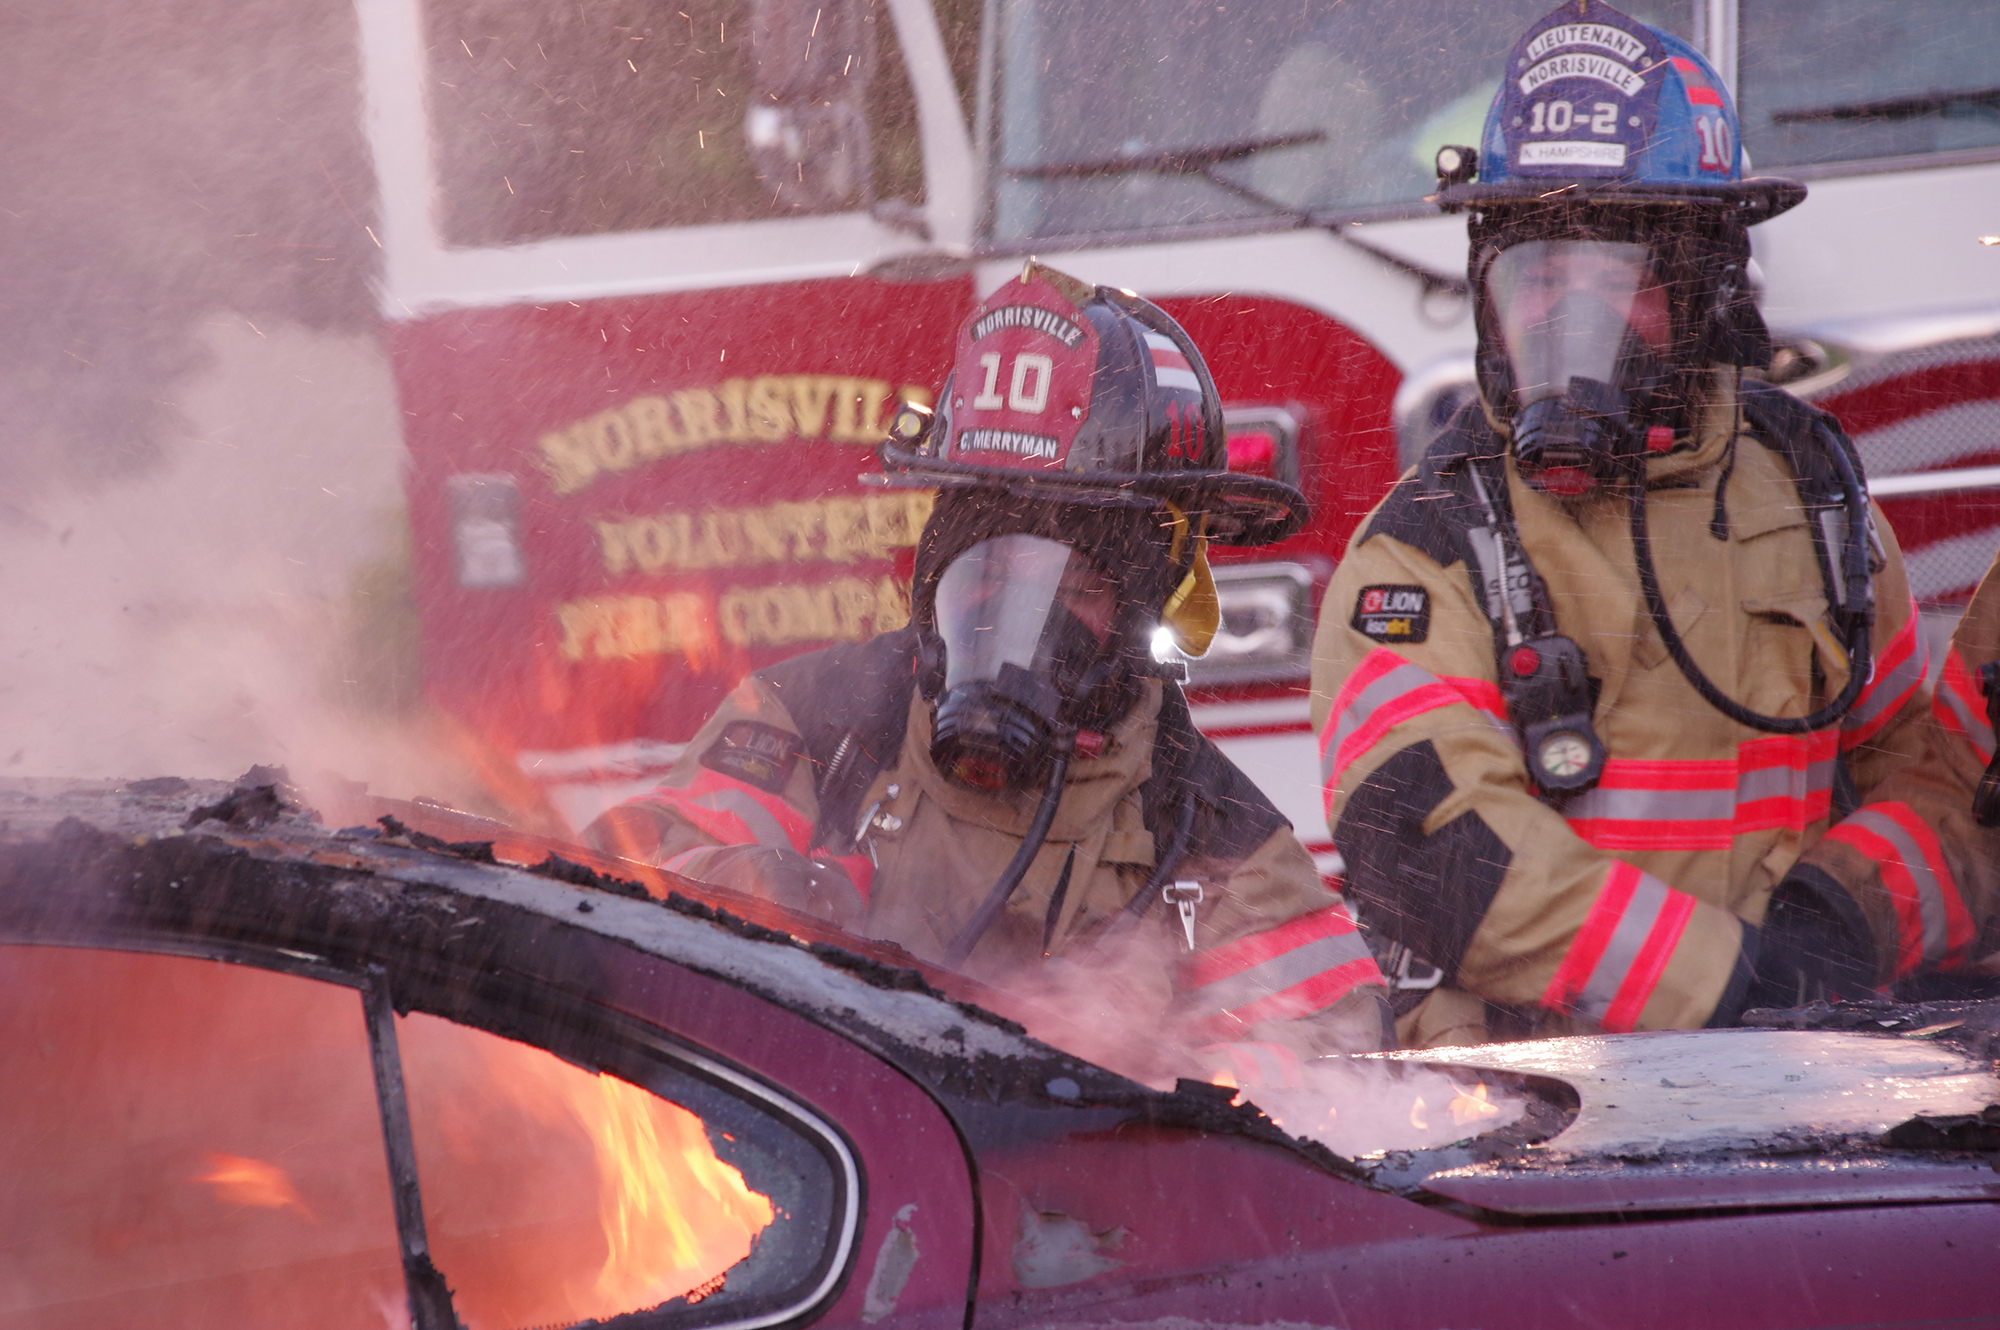 Norrisville Volunteer Fire Company